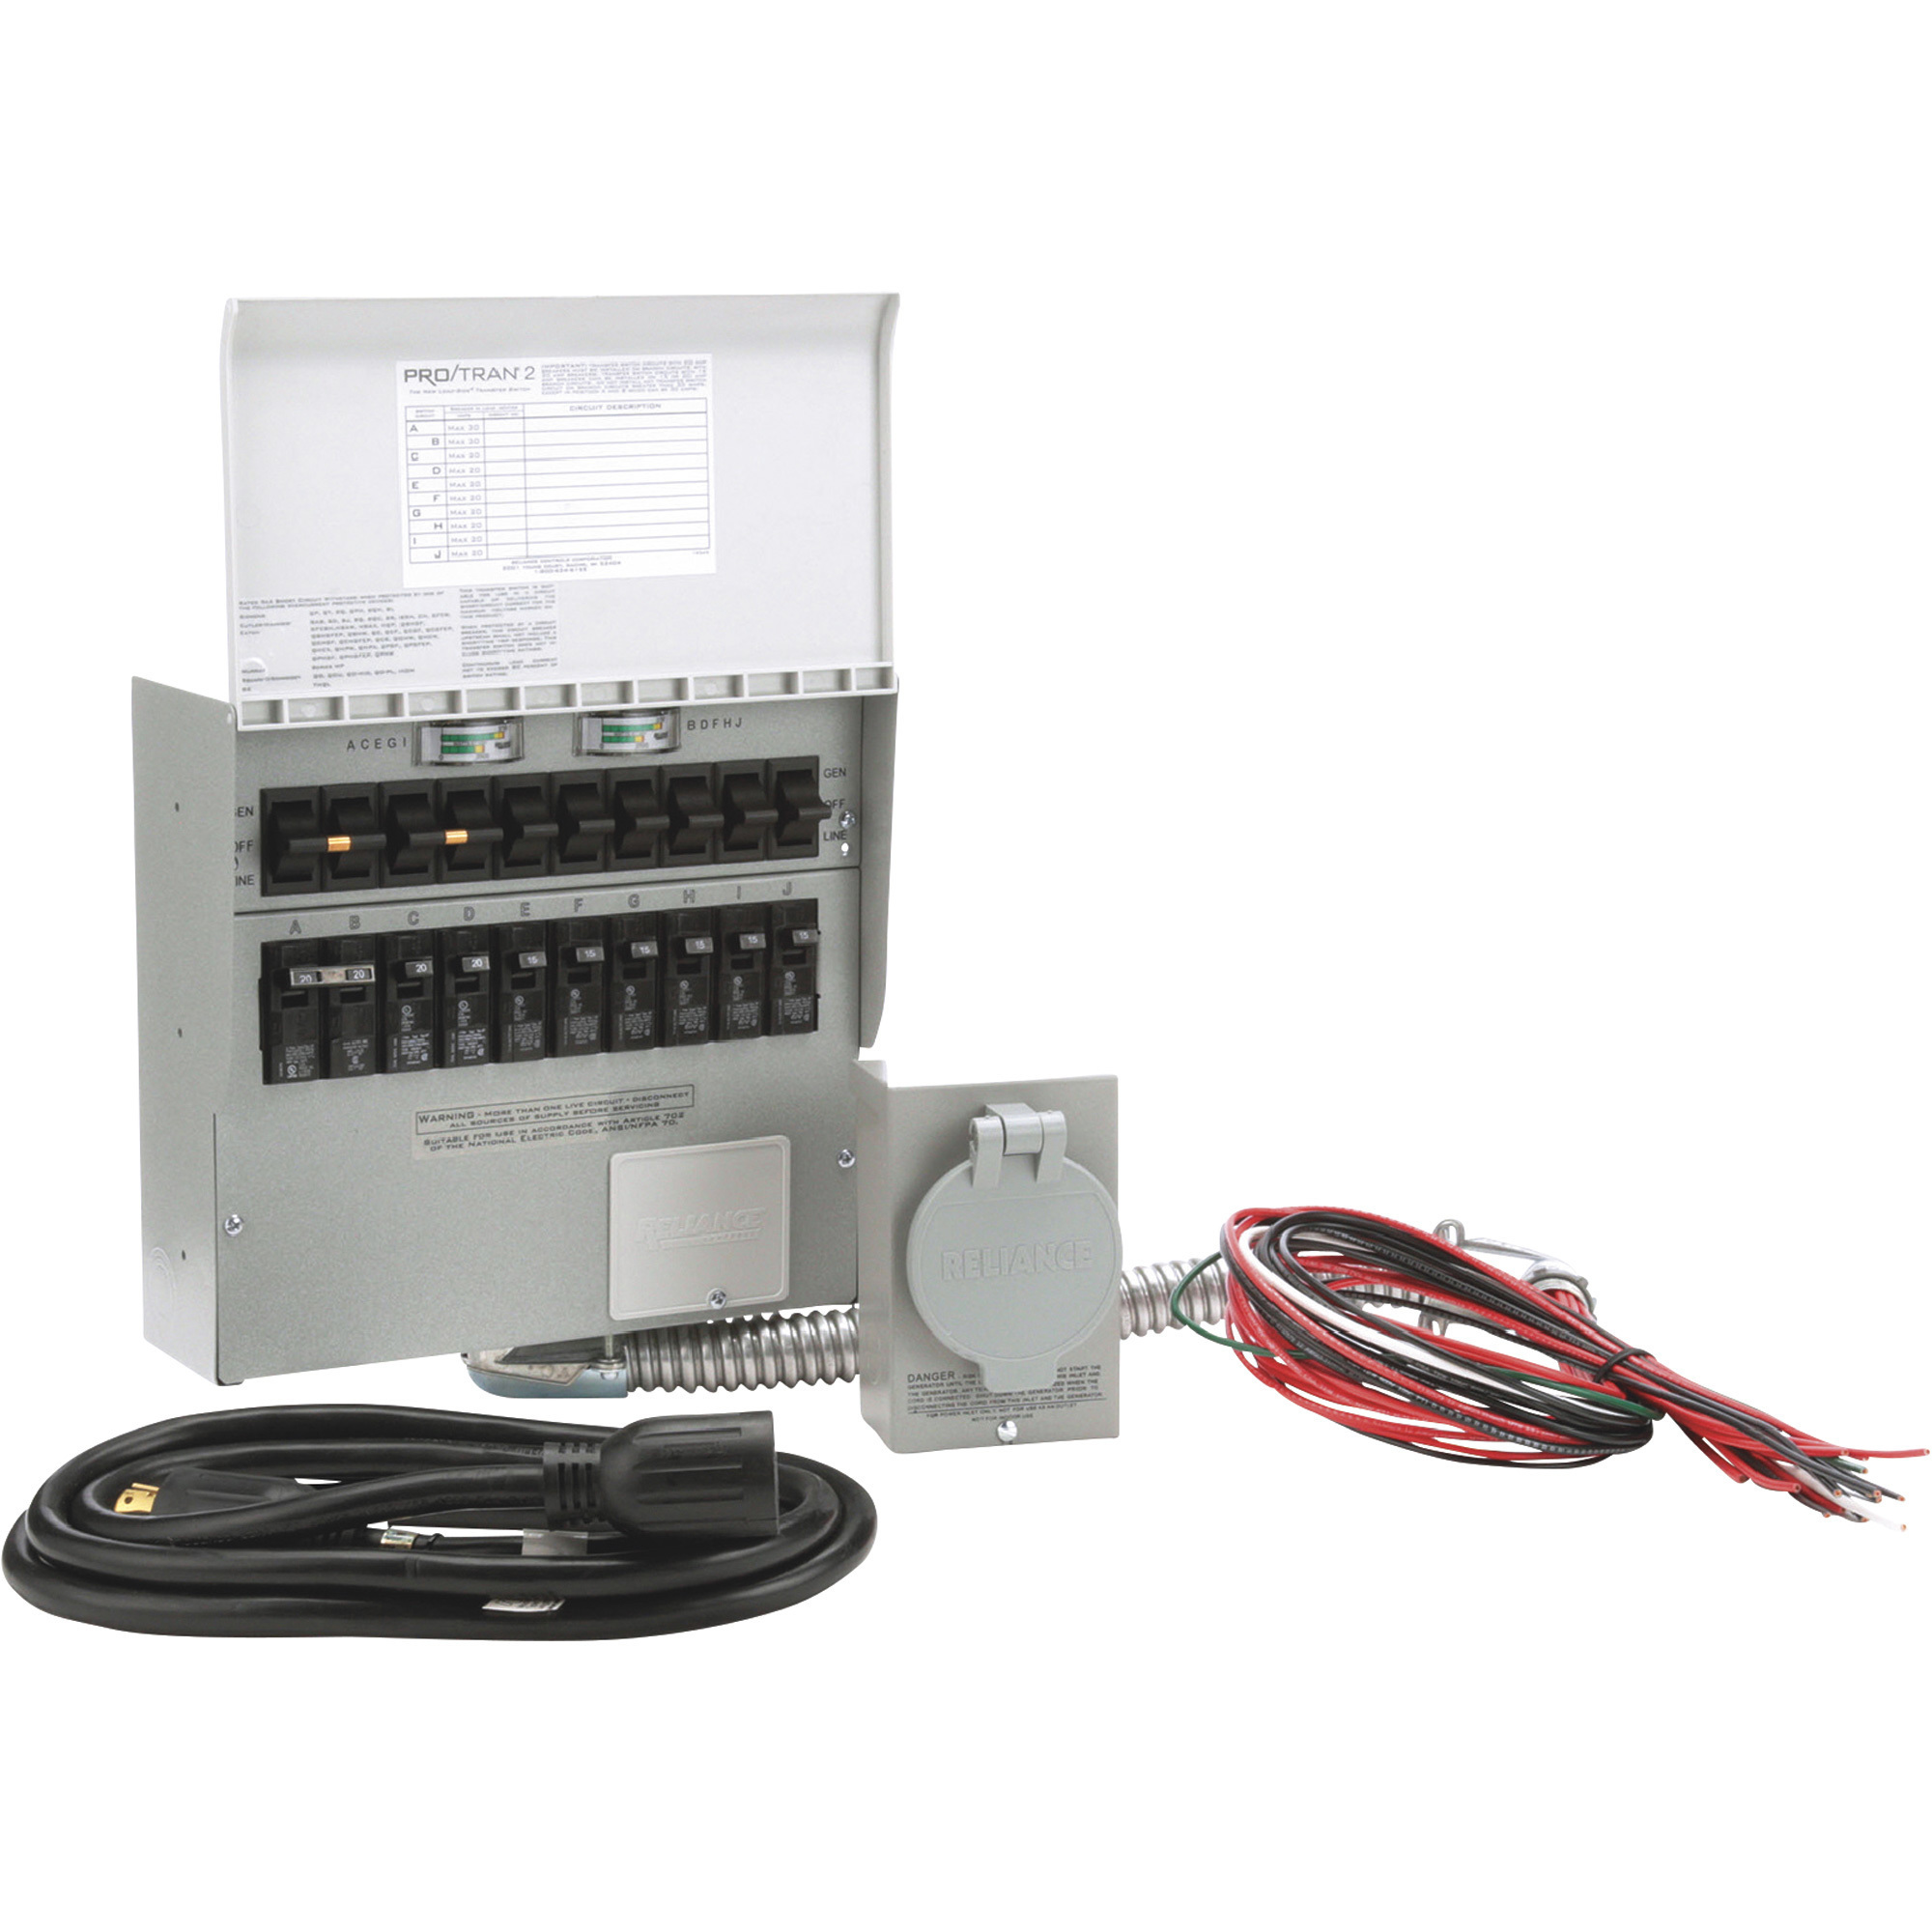 Reliance Generator Transfer Switch Kit â10 Circuit, Model 310CRK